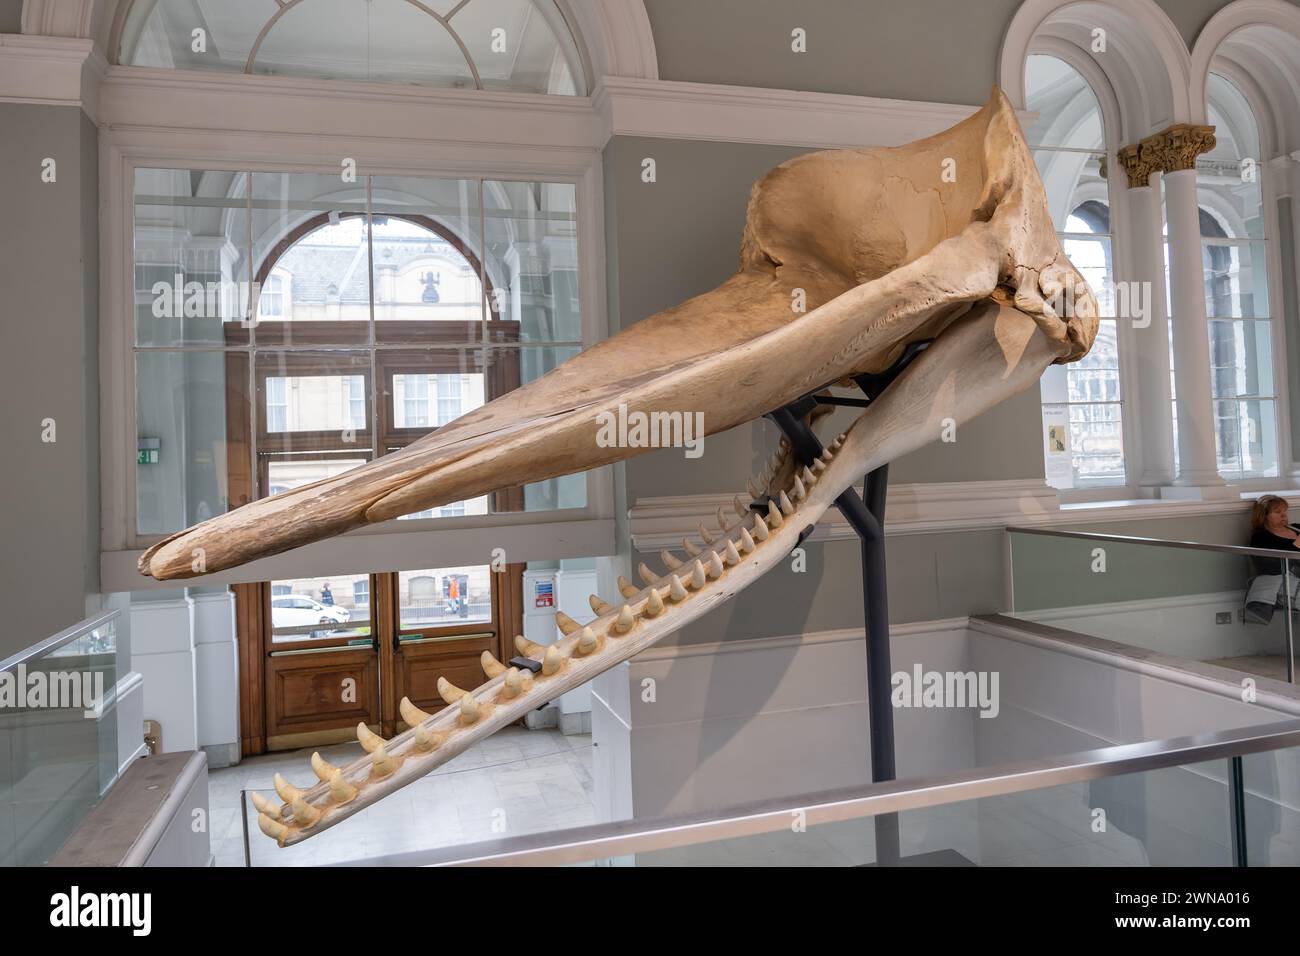 Schädel und Kieferknochen eines erwachsenen männlichen Pottwals Physeter catodon (Physeter macrocephalus) in der Familie Physeteridae im National Museum of Scotland in Stockfoto